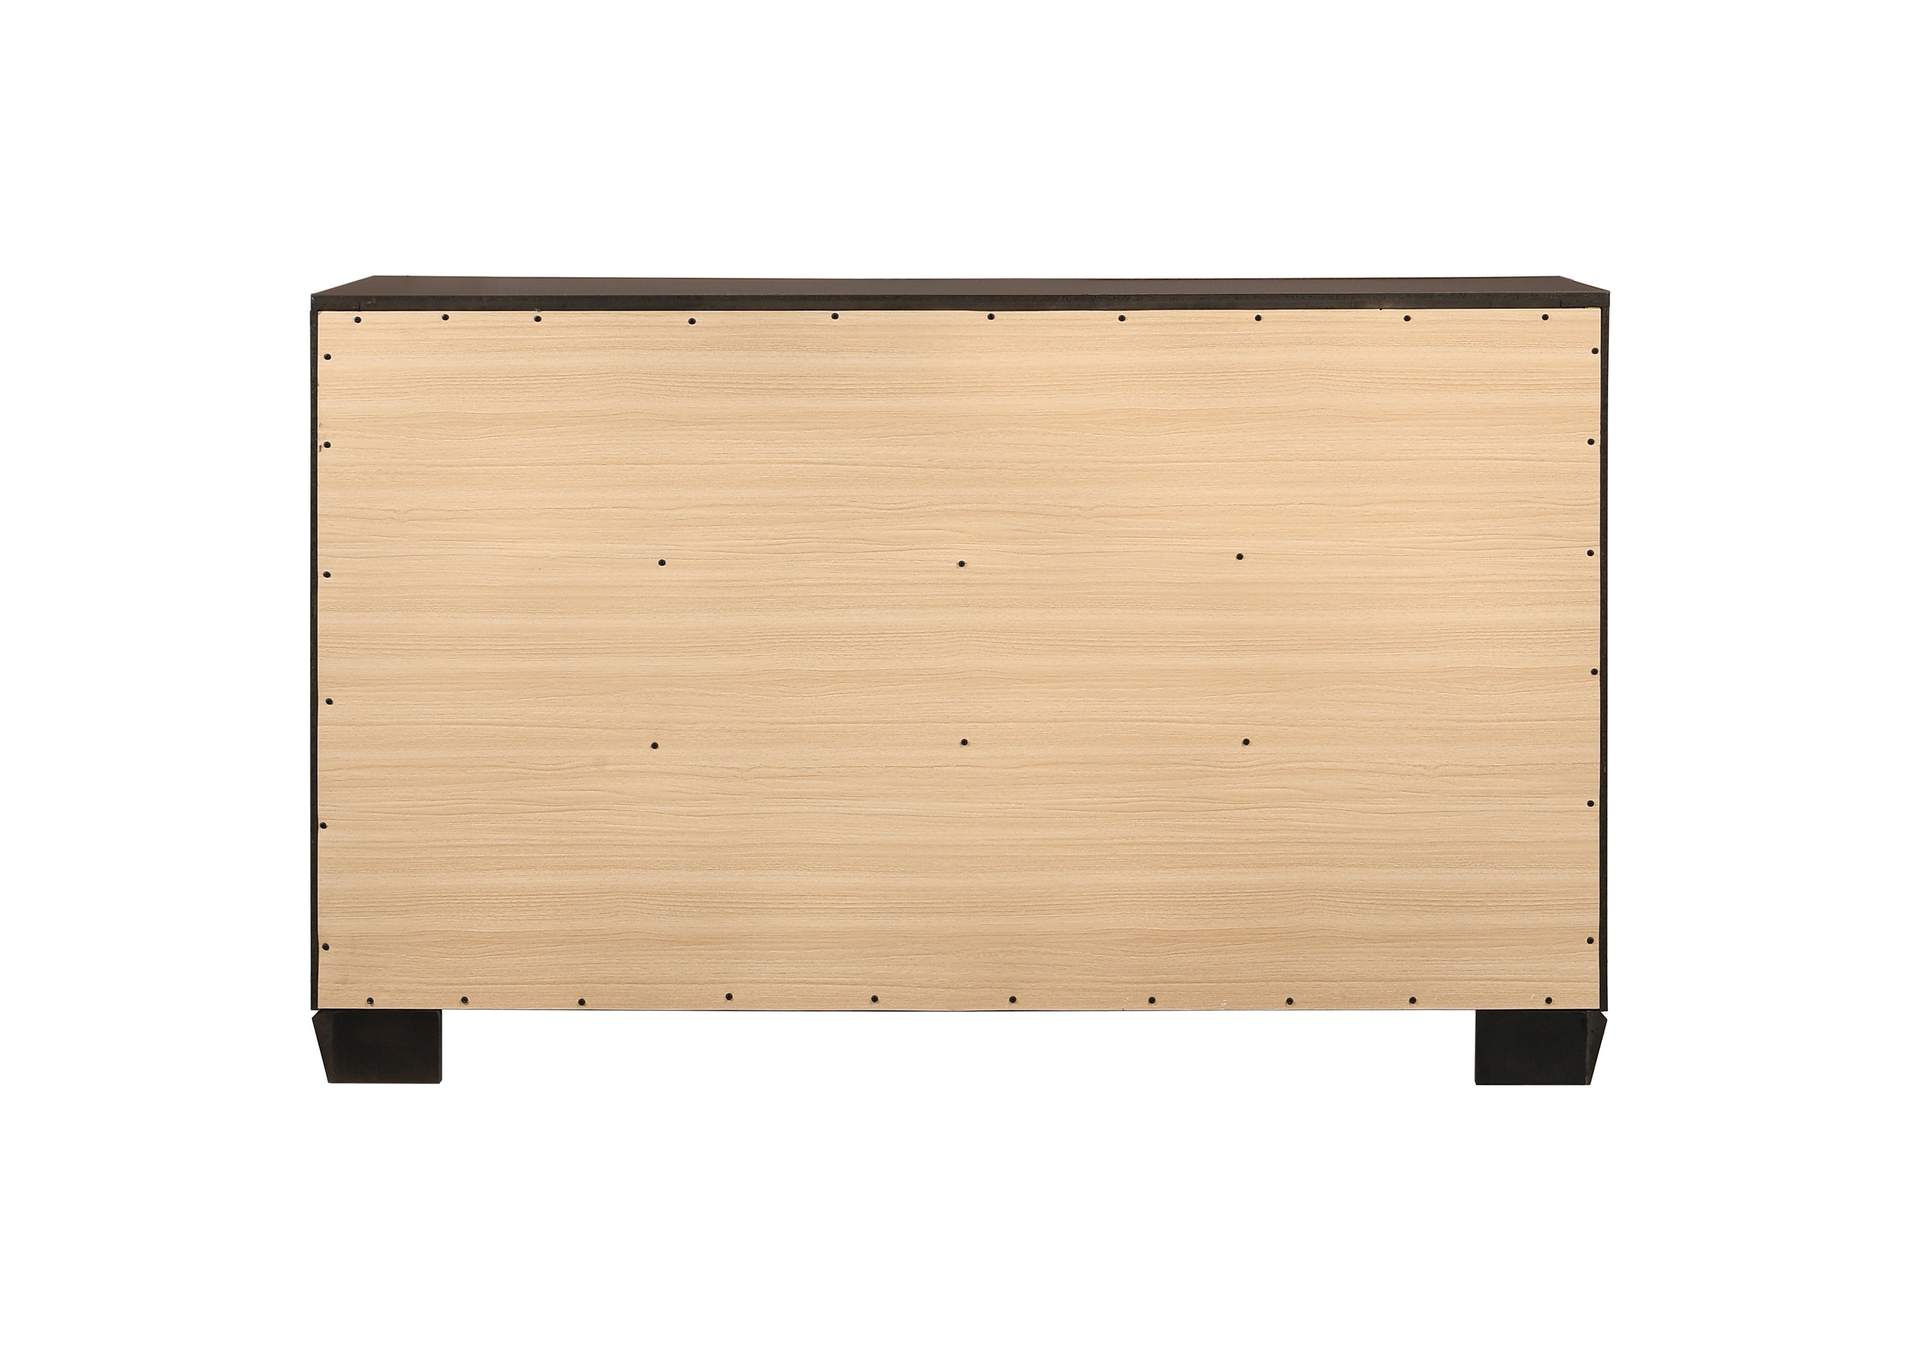 Kauffman 6-drawer Dresser Dark Cocoa,Coaster Furniture